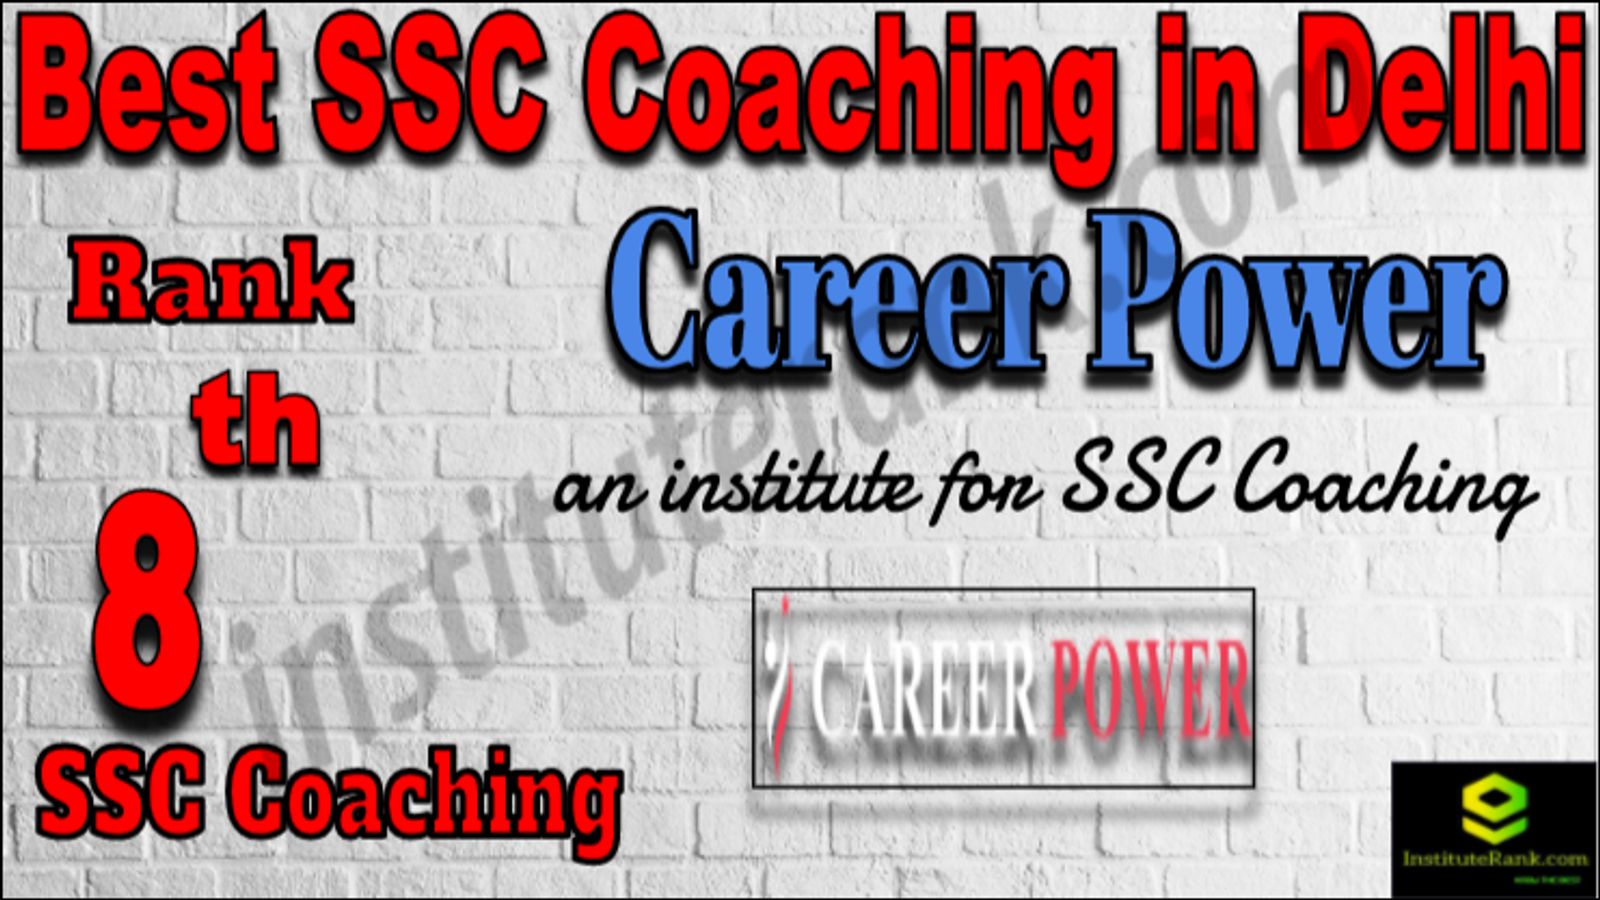 Rank 8 Best SSC Coaching in Delhi